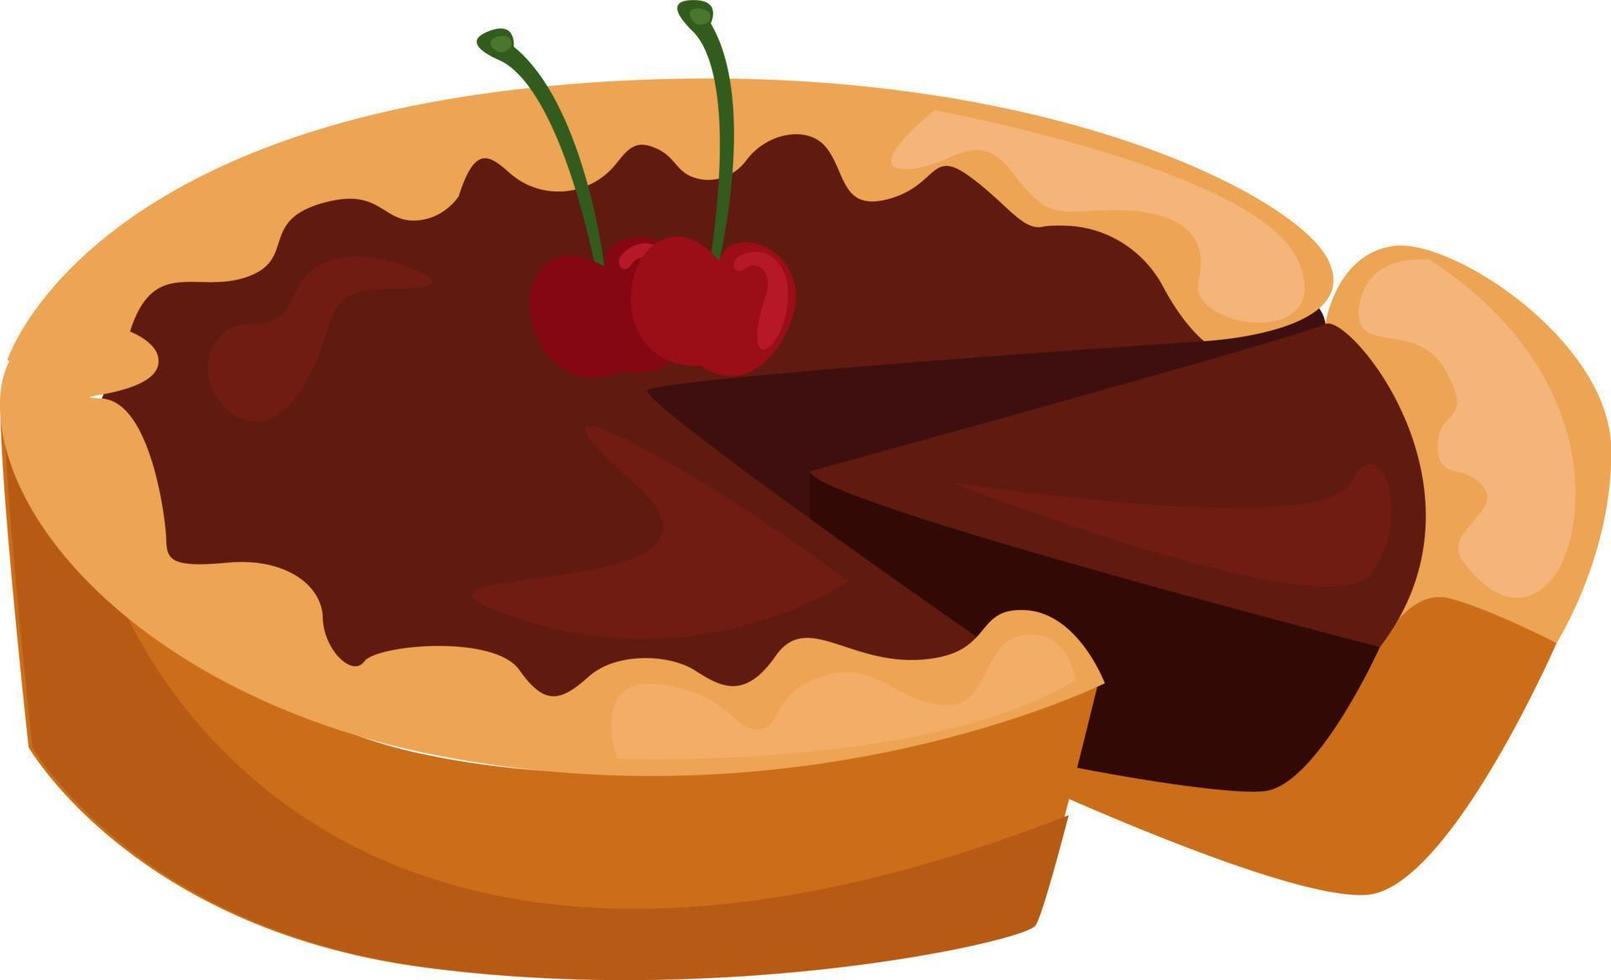 Schokoladen- und Kirschkuchen, Illustration, Vektor auf weißem Hintergrund.